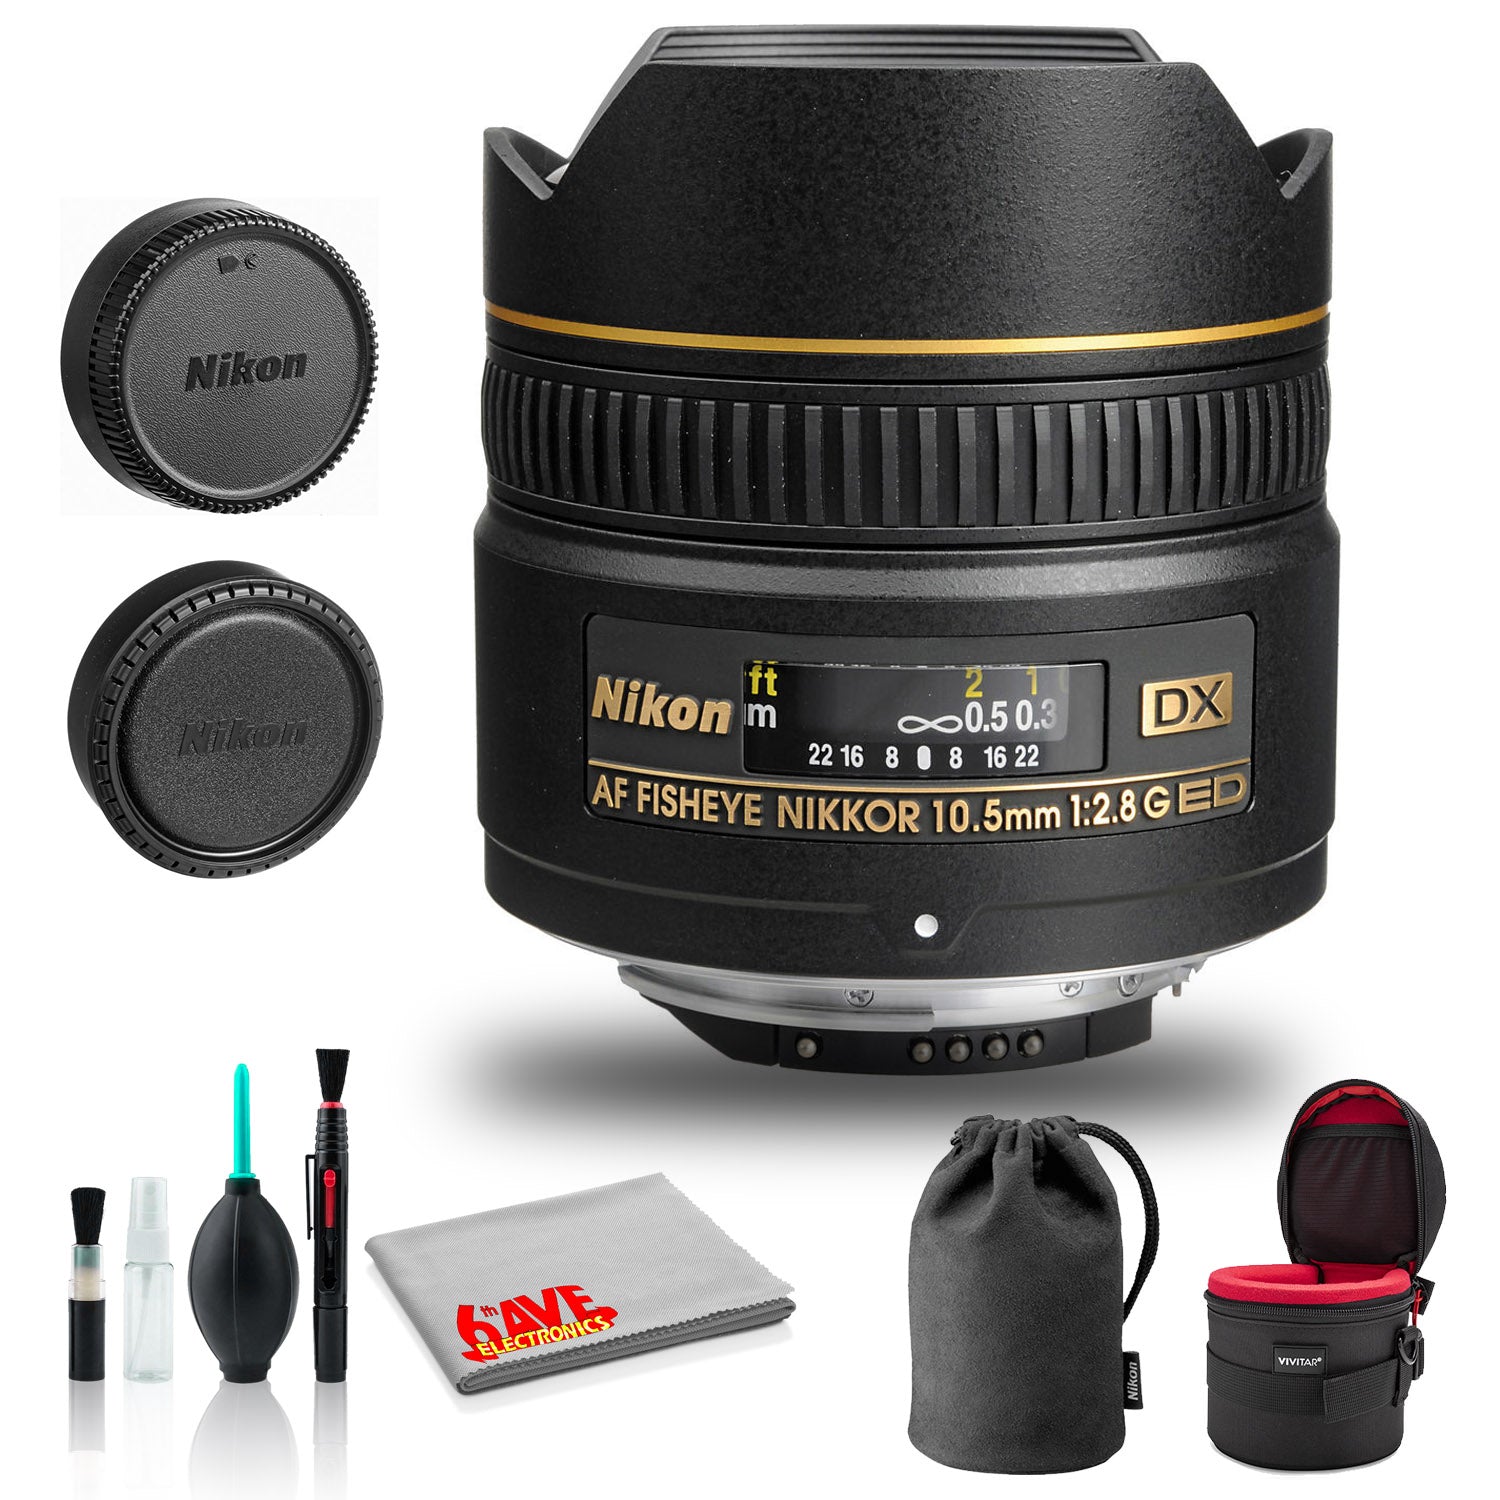 Nikon AF DX Fisheye-NIKKOR 10.5mm f/2.8G ED Lens (INTL Model) with Padded Case Bundle